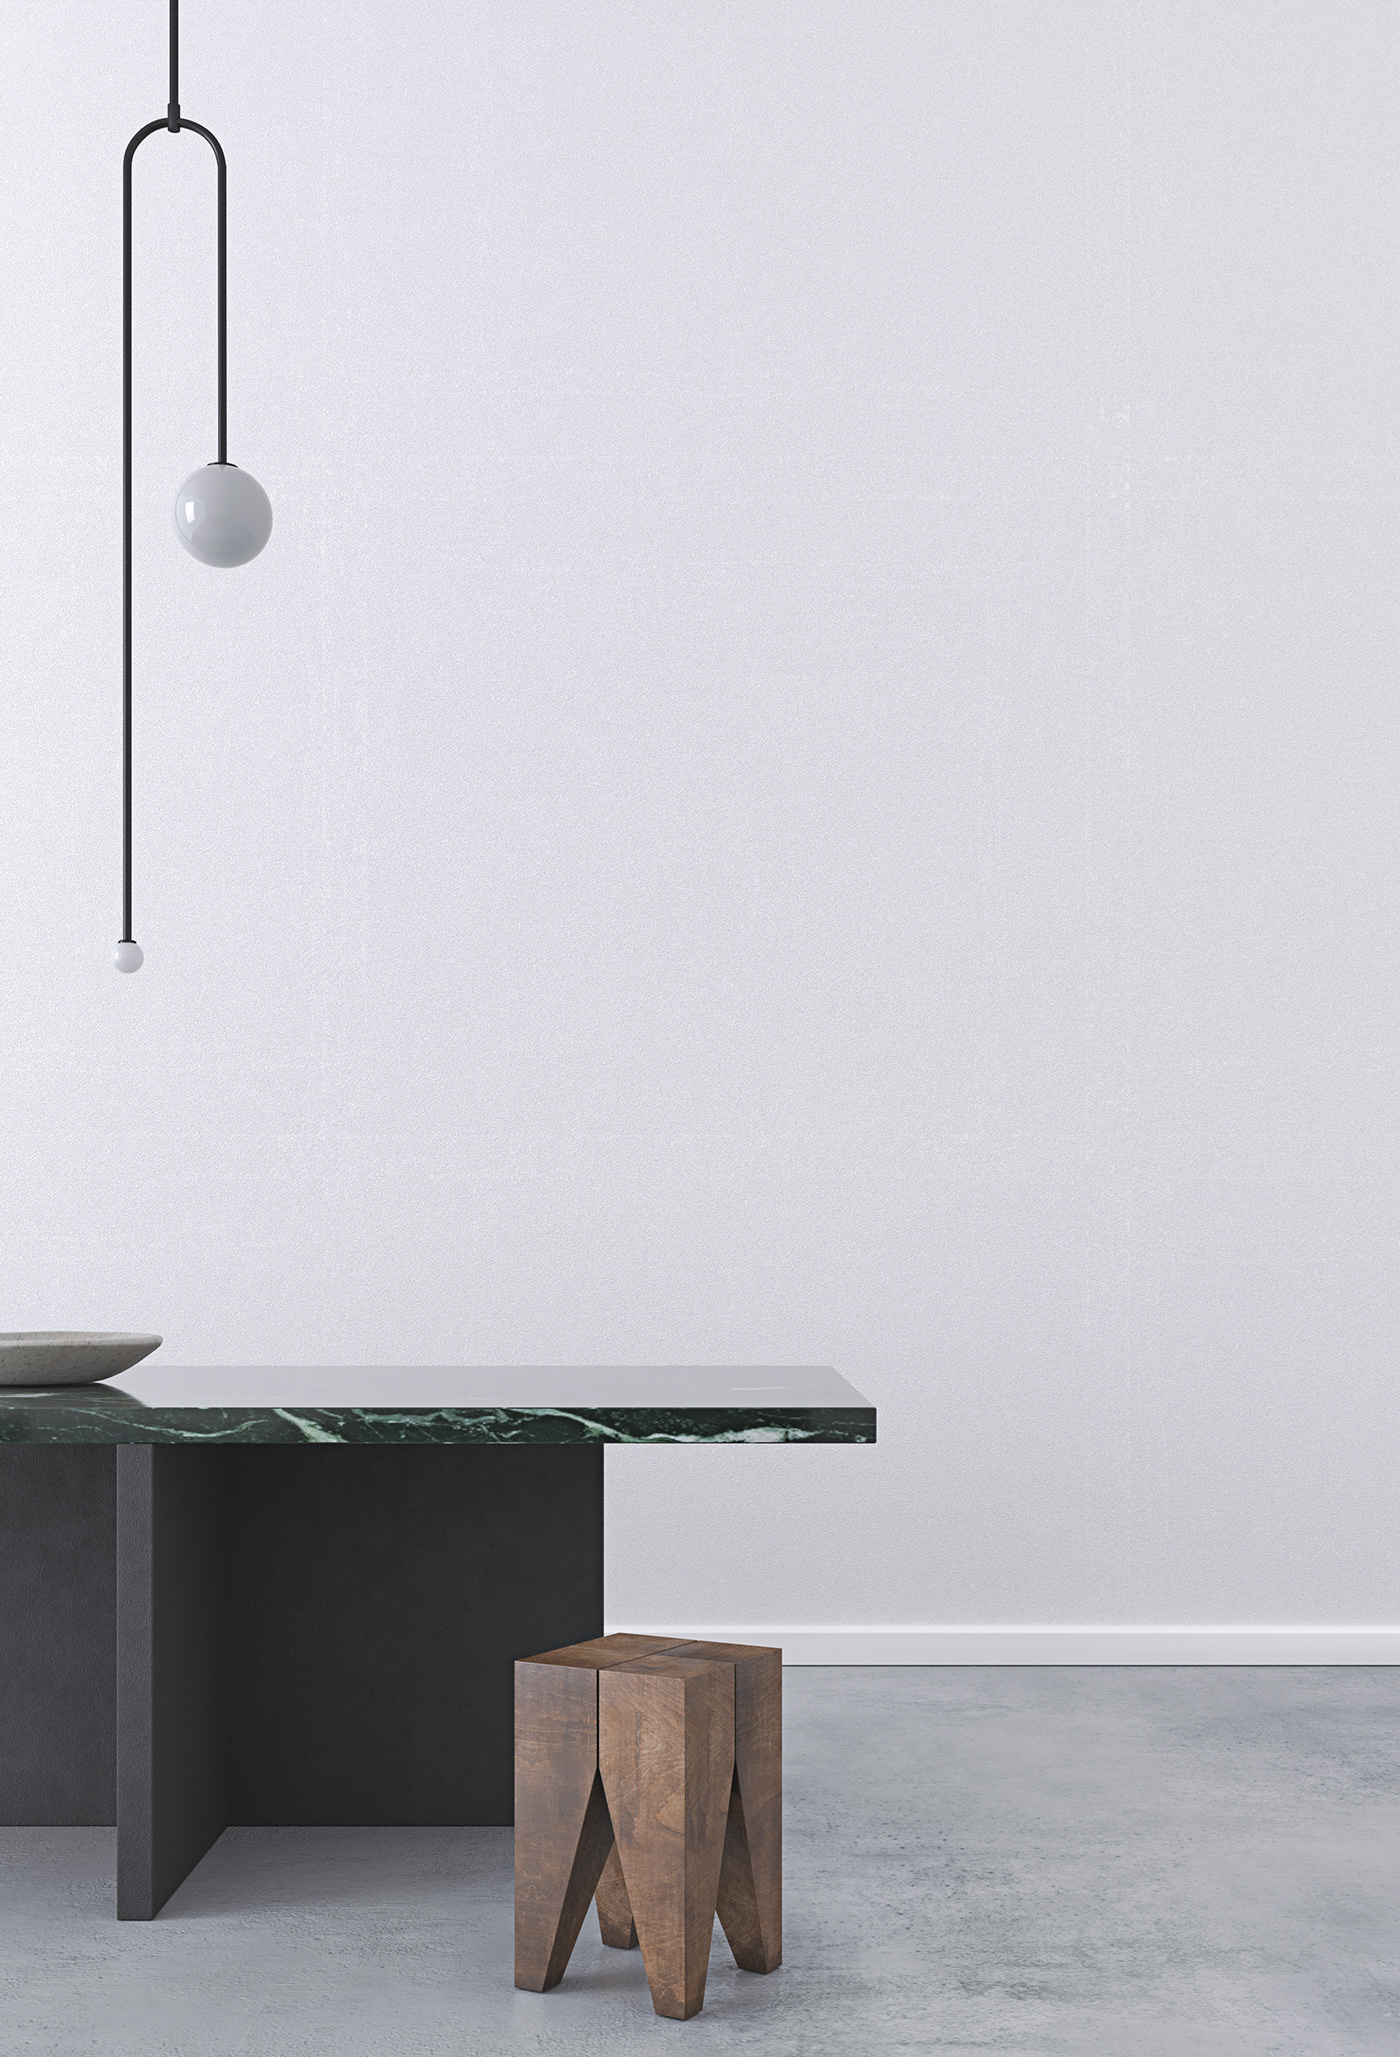 minimalist minimal house Interior concrete wood brute